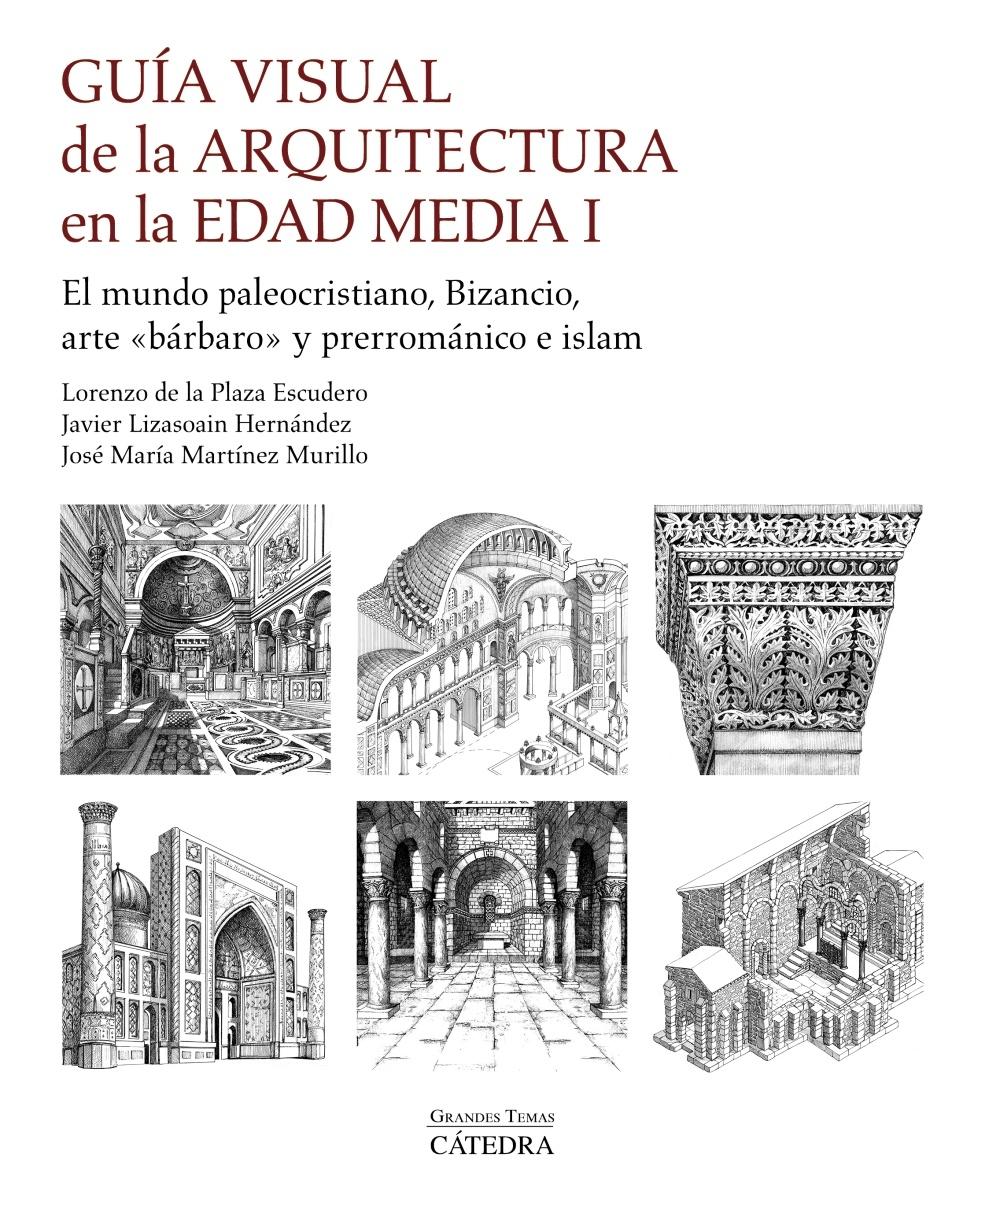 Guía Visual de la Arquitectura en la Edad Media I "El Mundo Paleocristiano, Bizancio, Arte "Bárbaro" y Prerrománico e Islam"